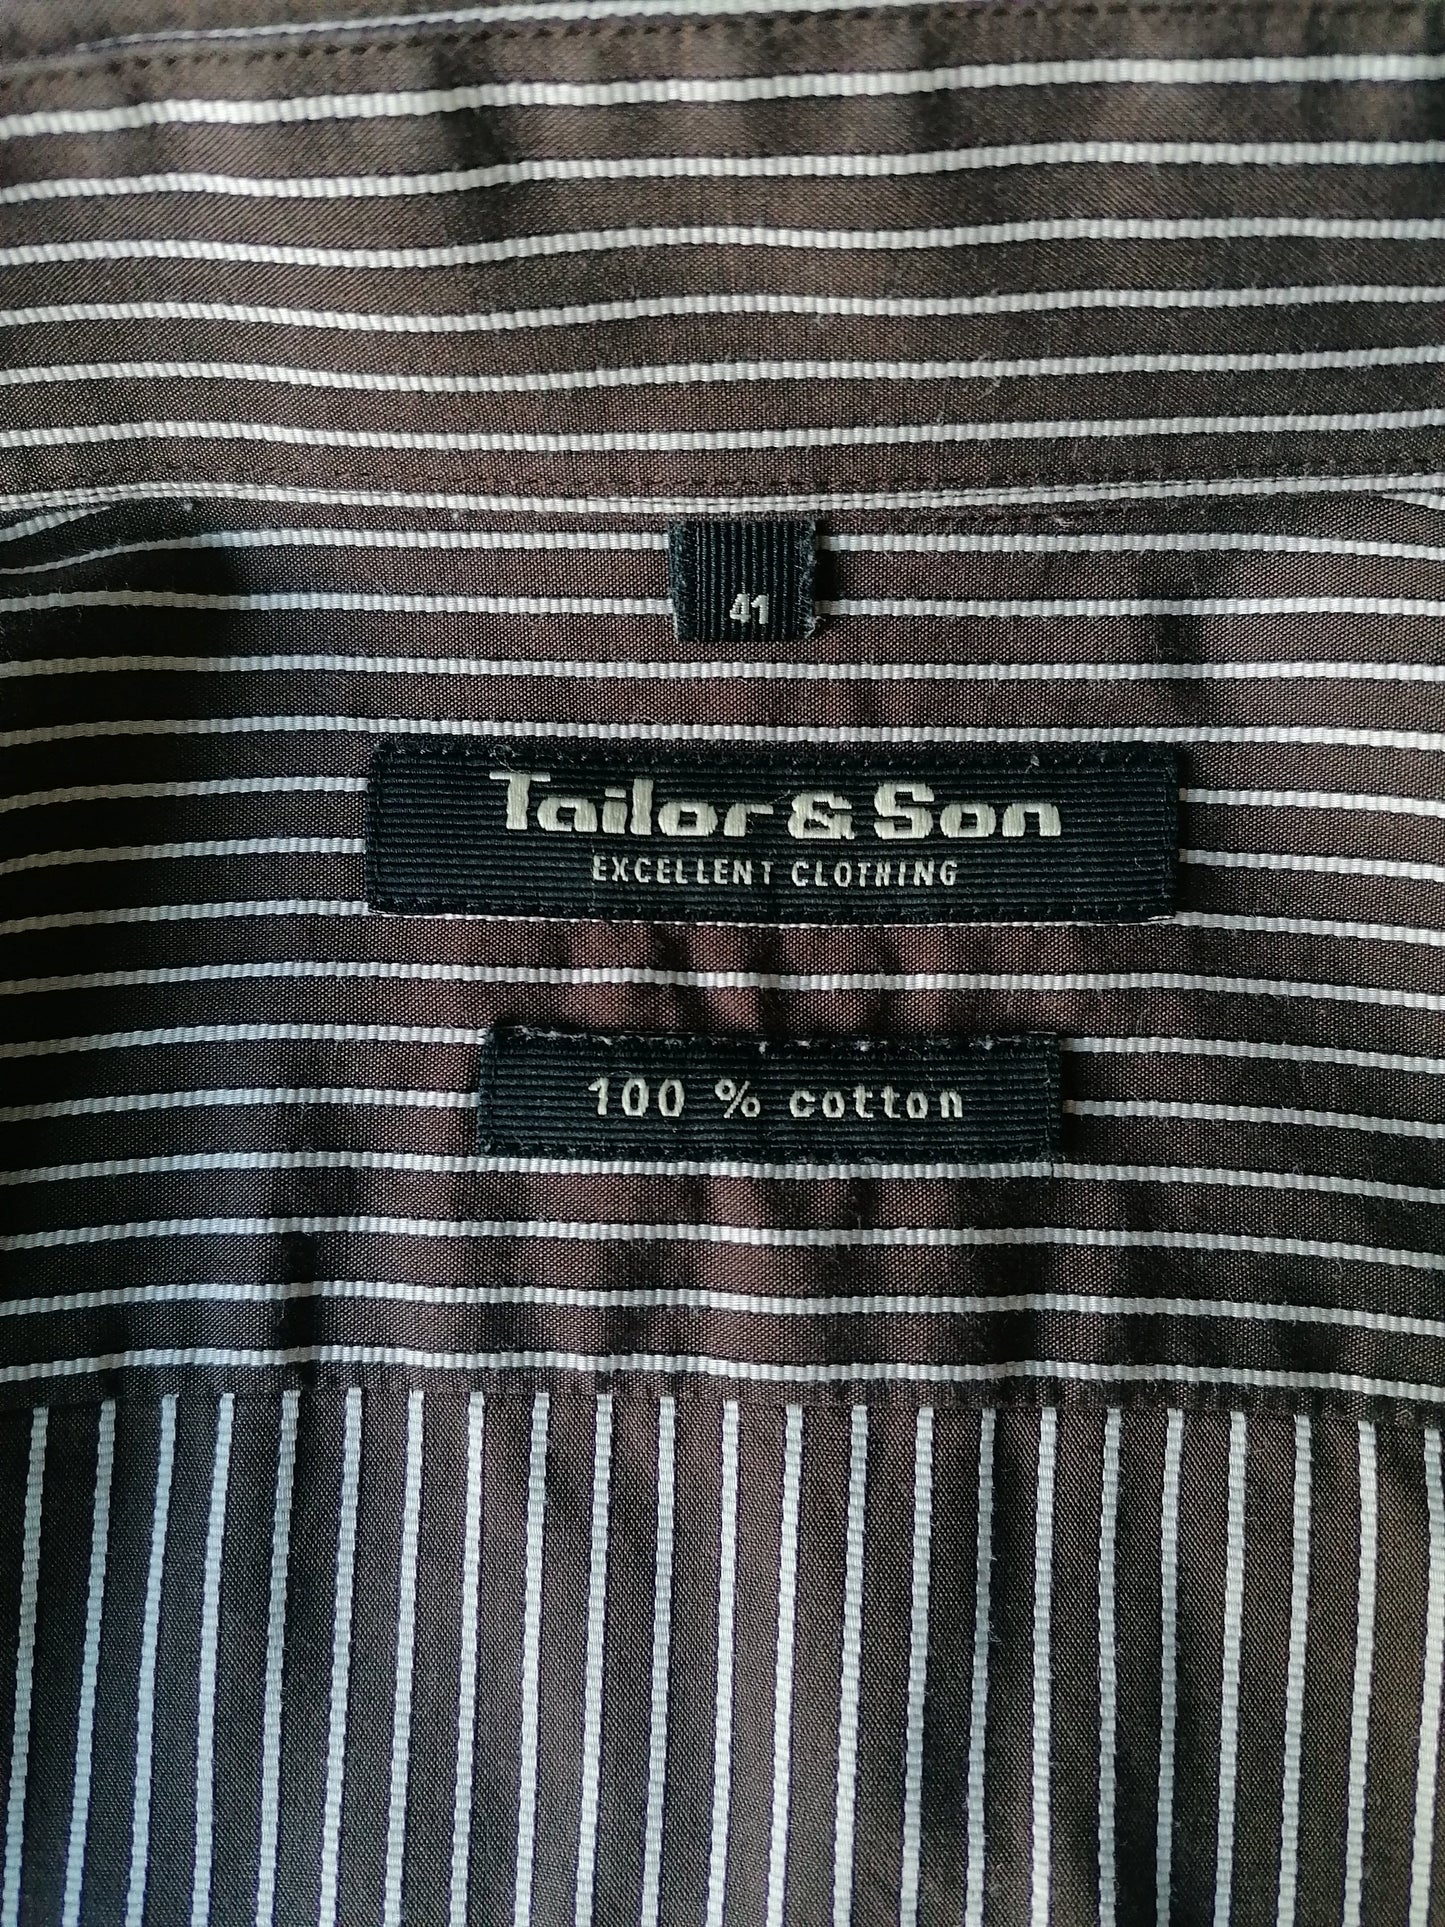 Tailor & Son overhemd. Bruin Beige gestreept. Maat 41 / L.